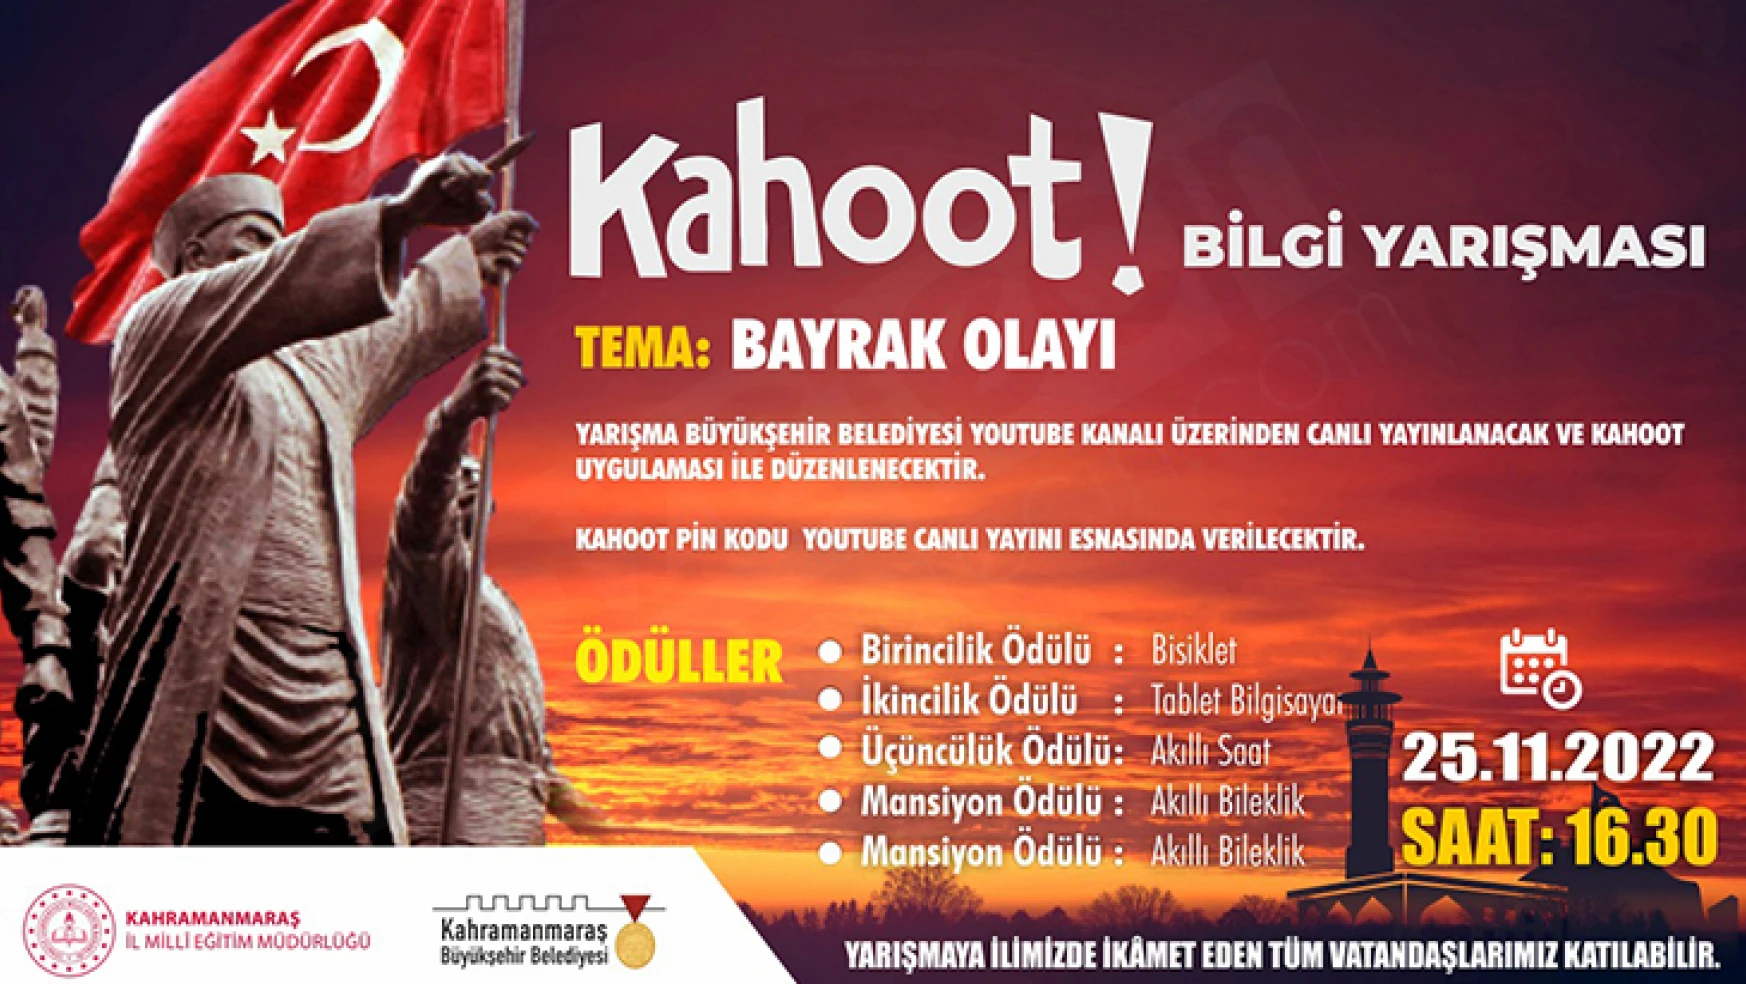 Bayrak Olayı'nın 103. yıl dönümünde Kahoot bilgi yarışması